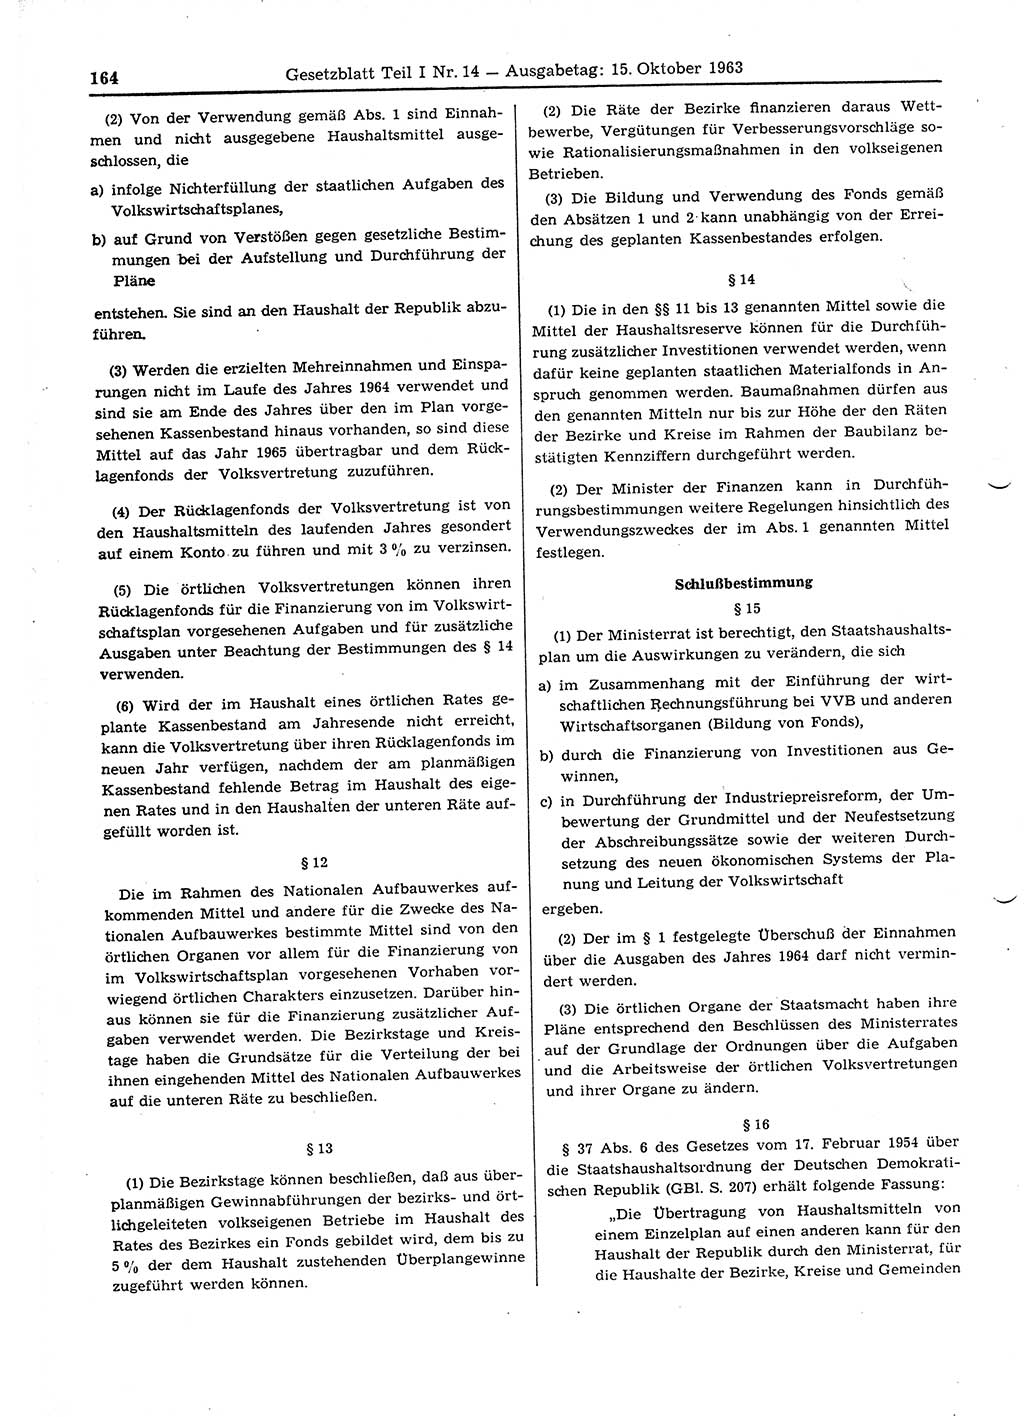 Gesetzblatt (GBl.) der Deutschen Demokratischen Republik (DDR) Teil Ⅰ 1963, Seite 164 (GBl. DDR Ⅰ 1963, S. 164)